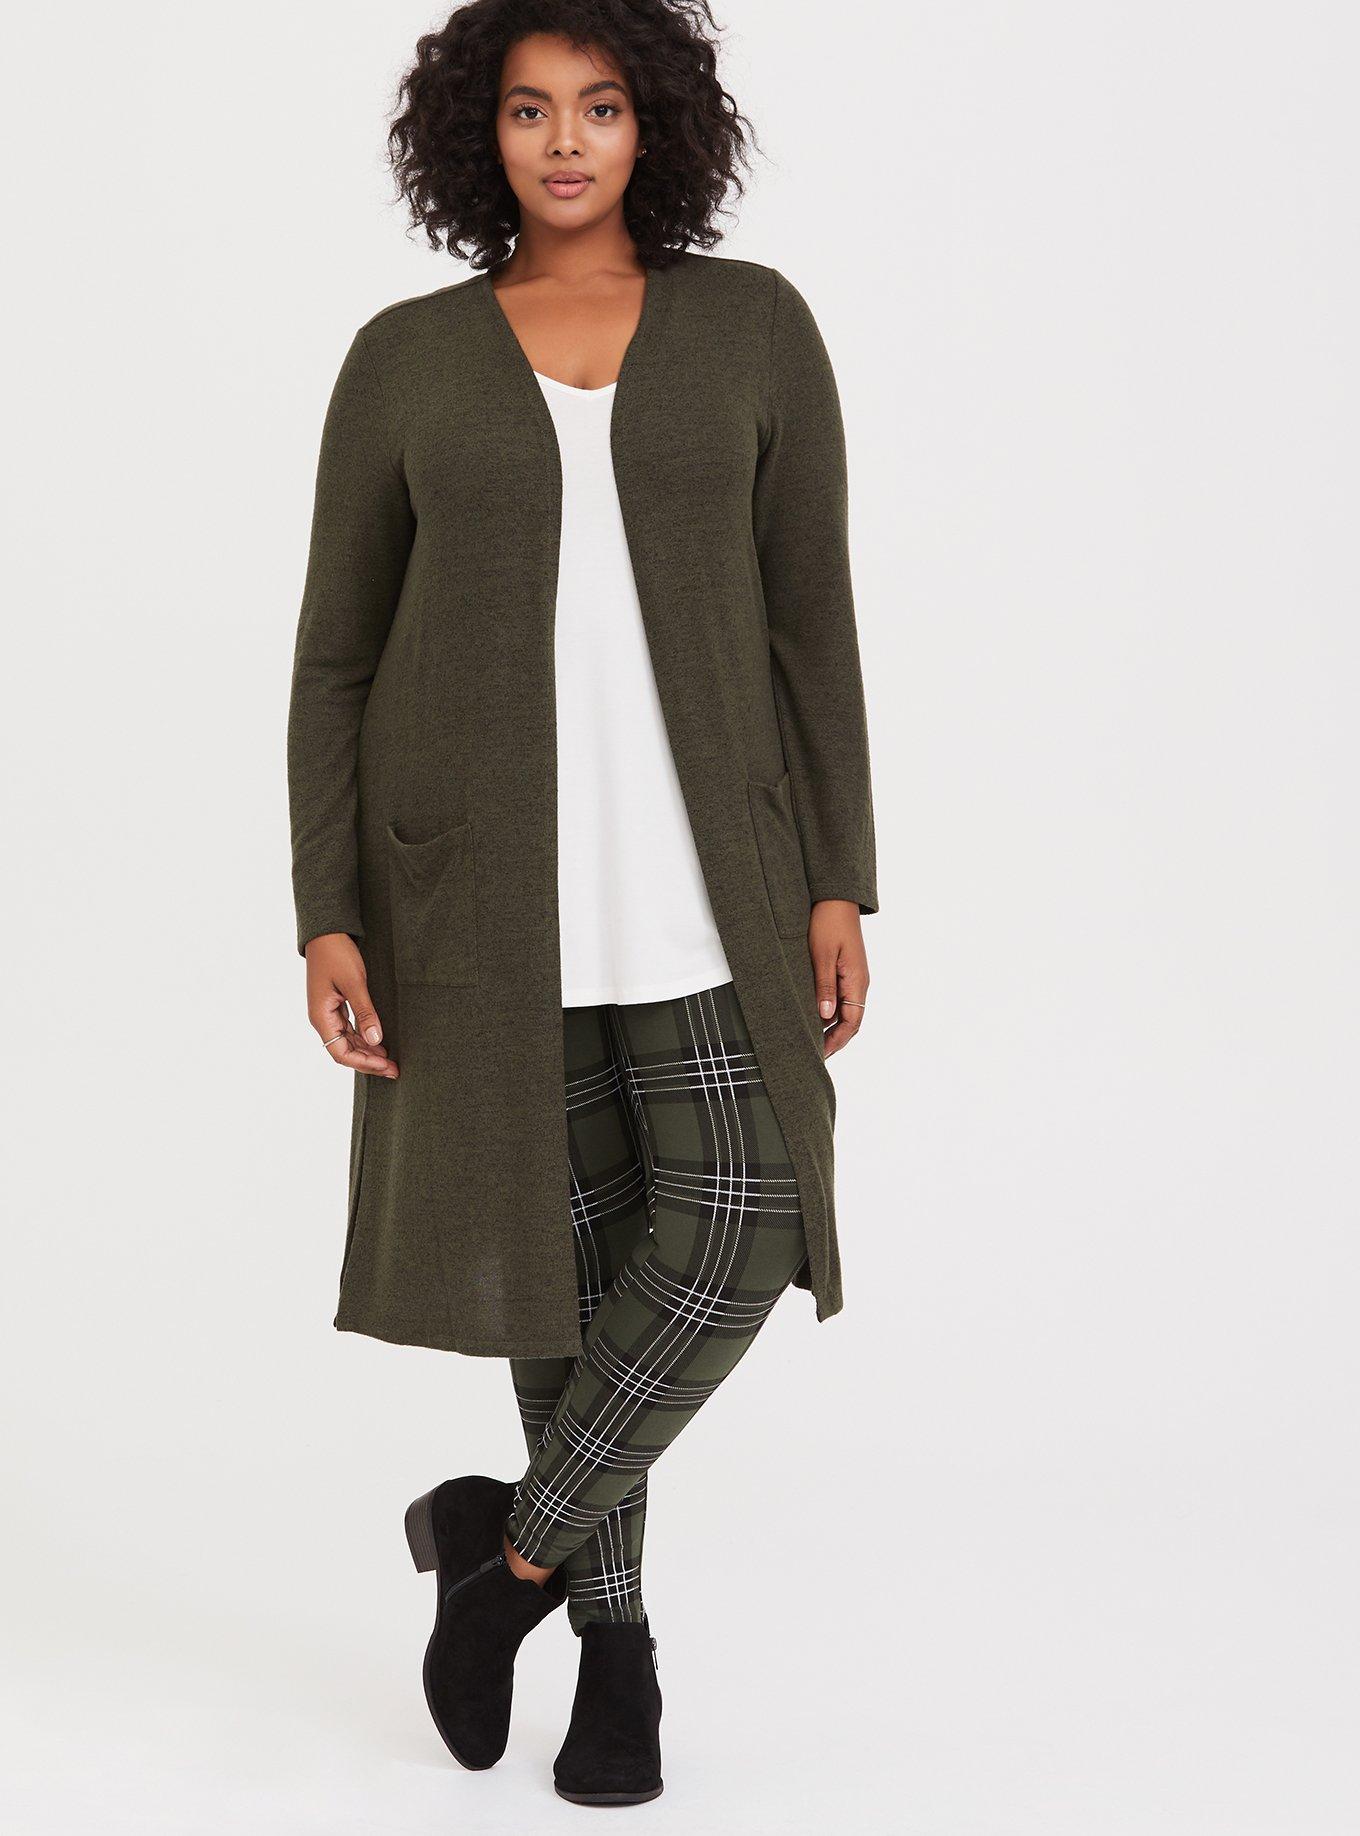 Torrid 2X Leggings Sweater Knit Jacquard Green Plaid Plus Size Mid Rise  Pants